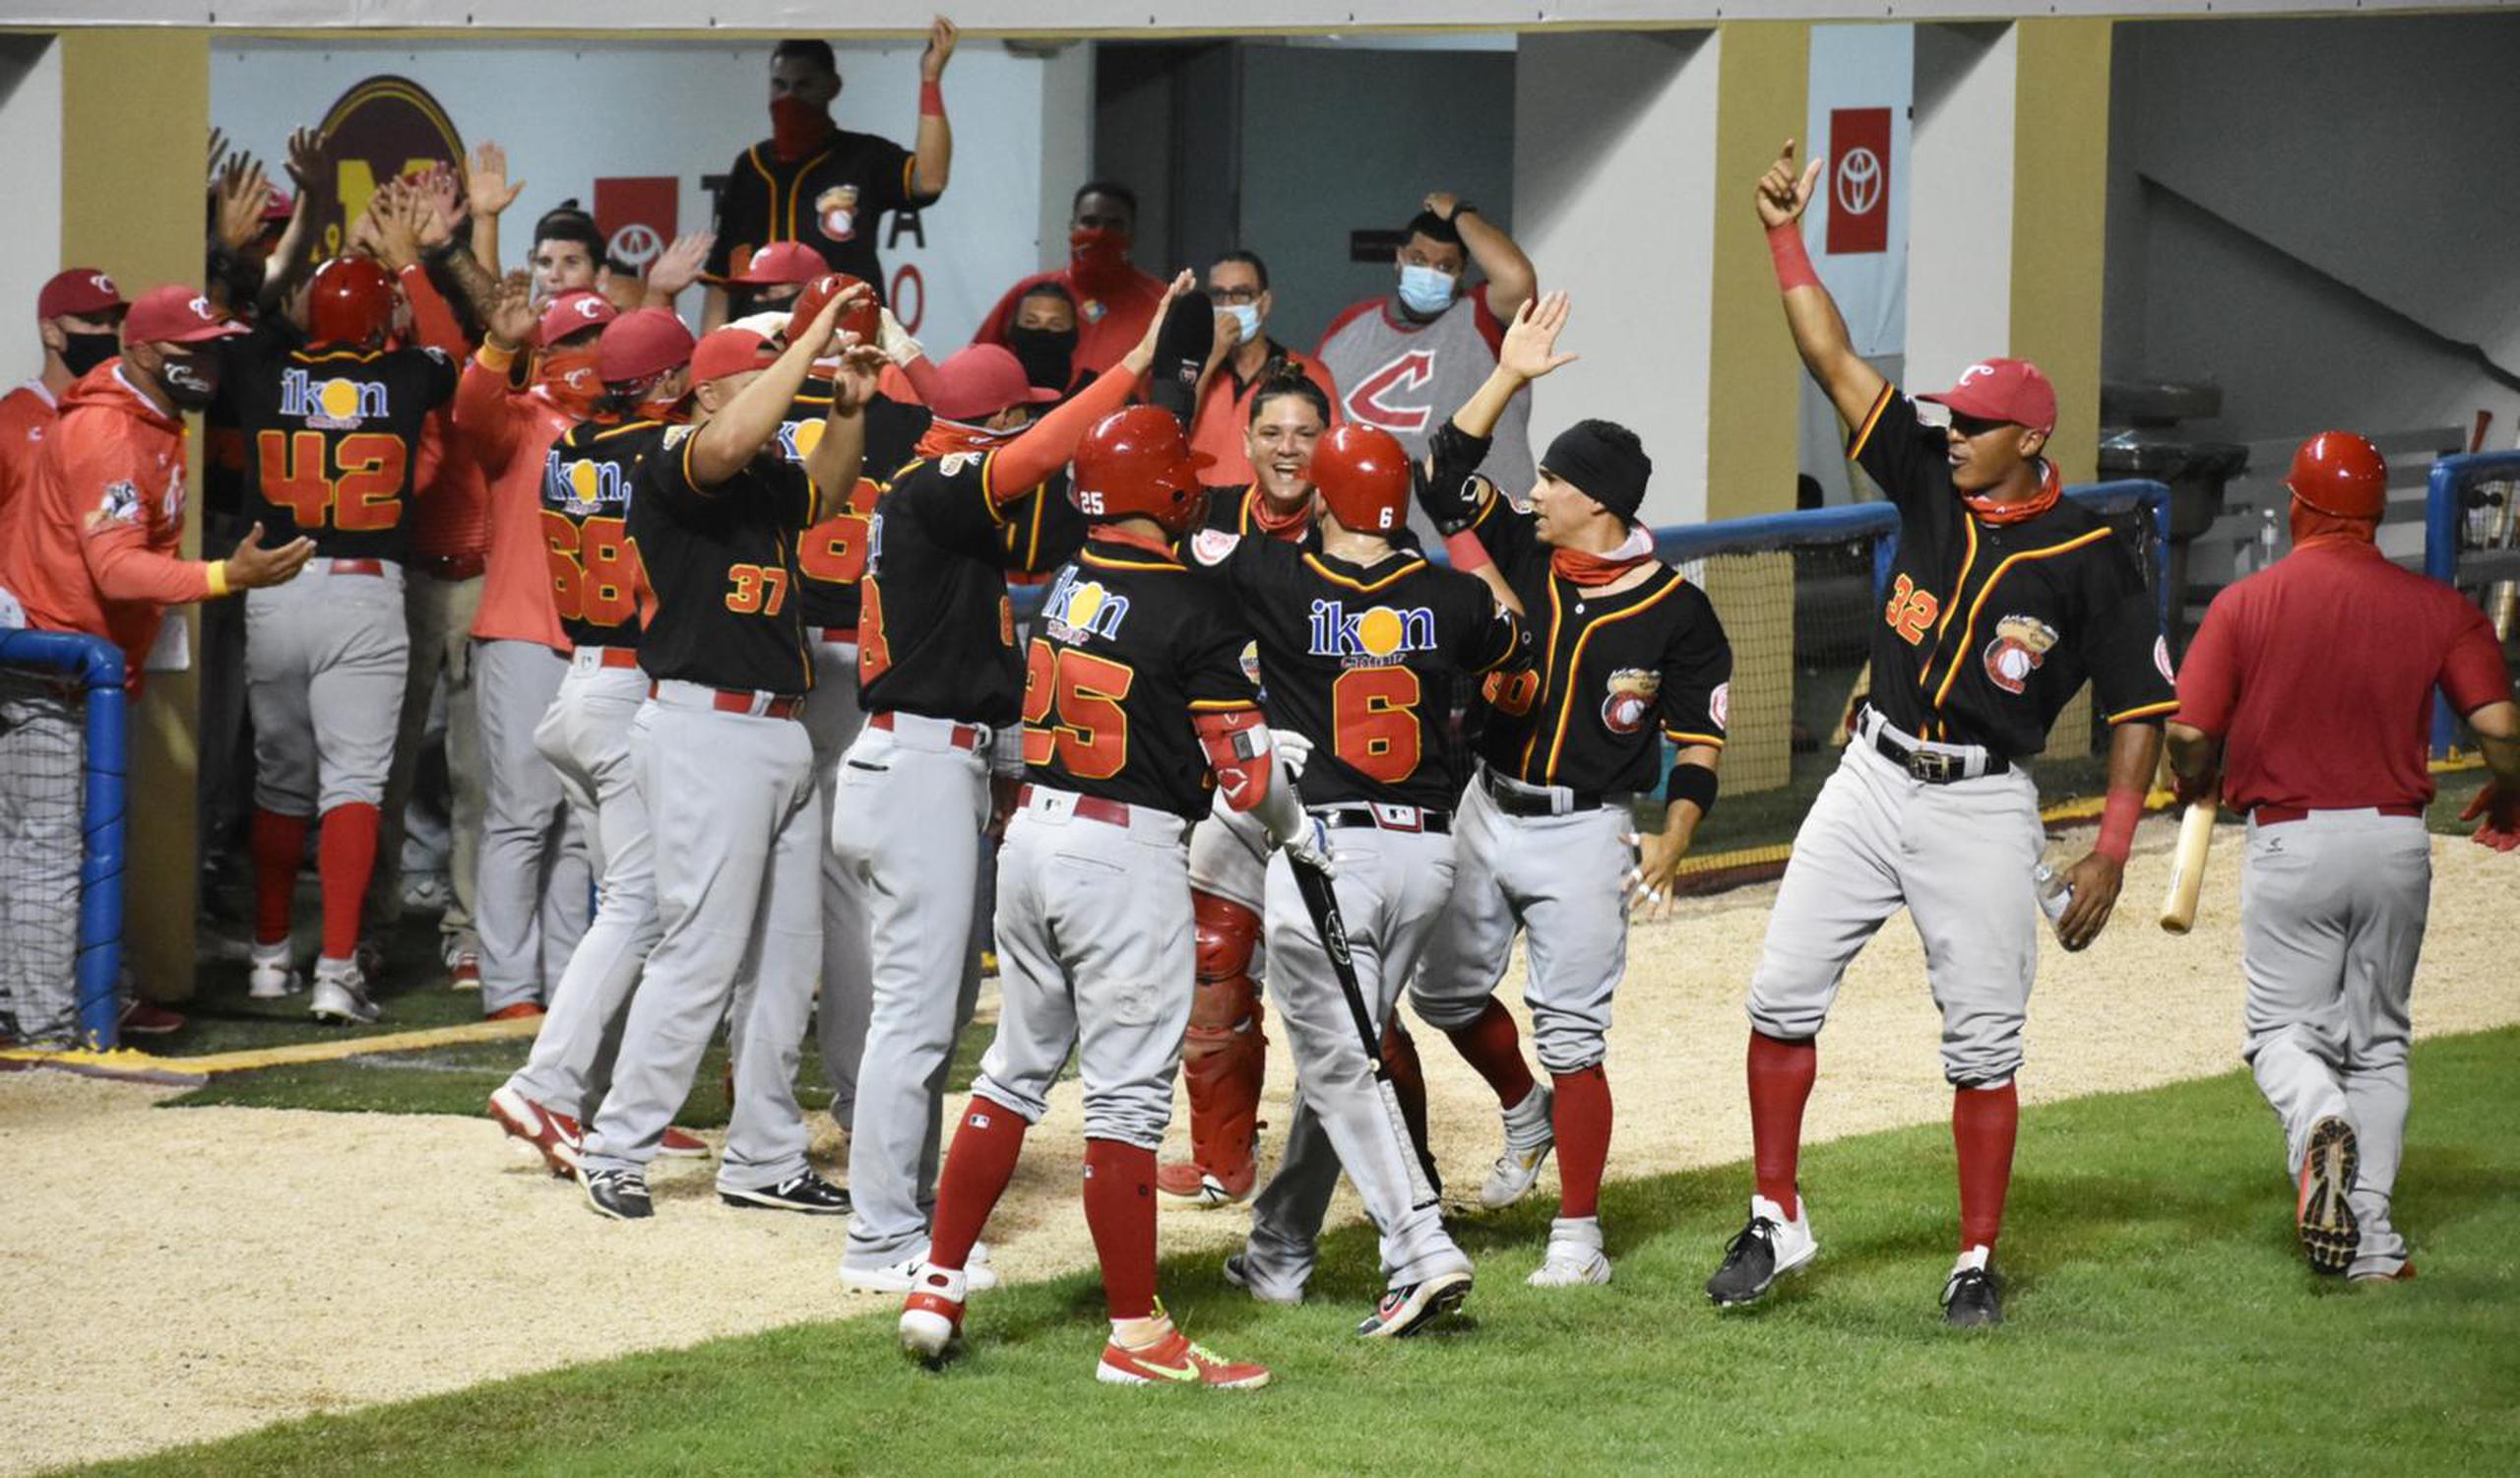 Los Criollos, de Caguas, campeones de la temporada 2020-21 de la Liga de Béisbol Profesional Roberto Clemente (Lbprc), celebran una de las dramáticas anotaciones que lograron el domingo para levantar el trofeo.